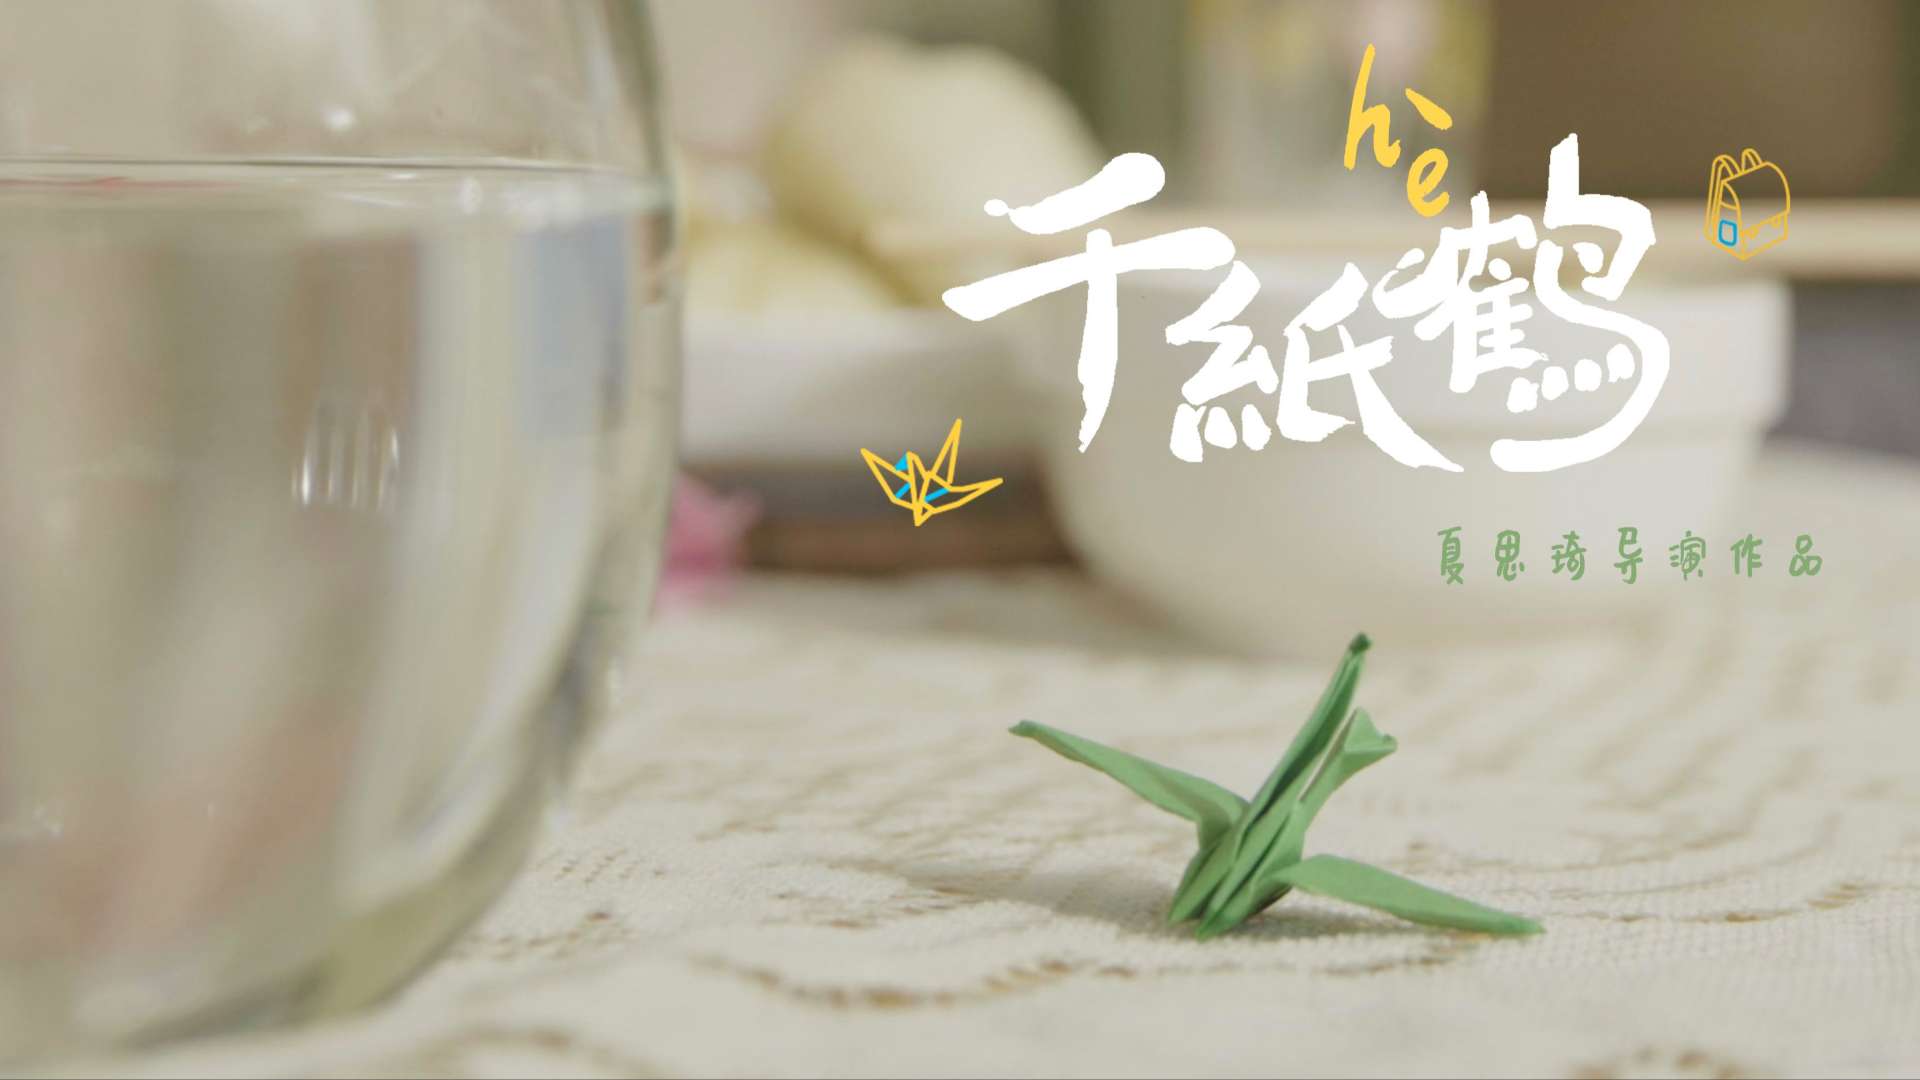 北京服装学院数字媒体专业大三学生短片 ——《千纸鹤》